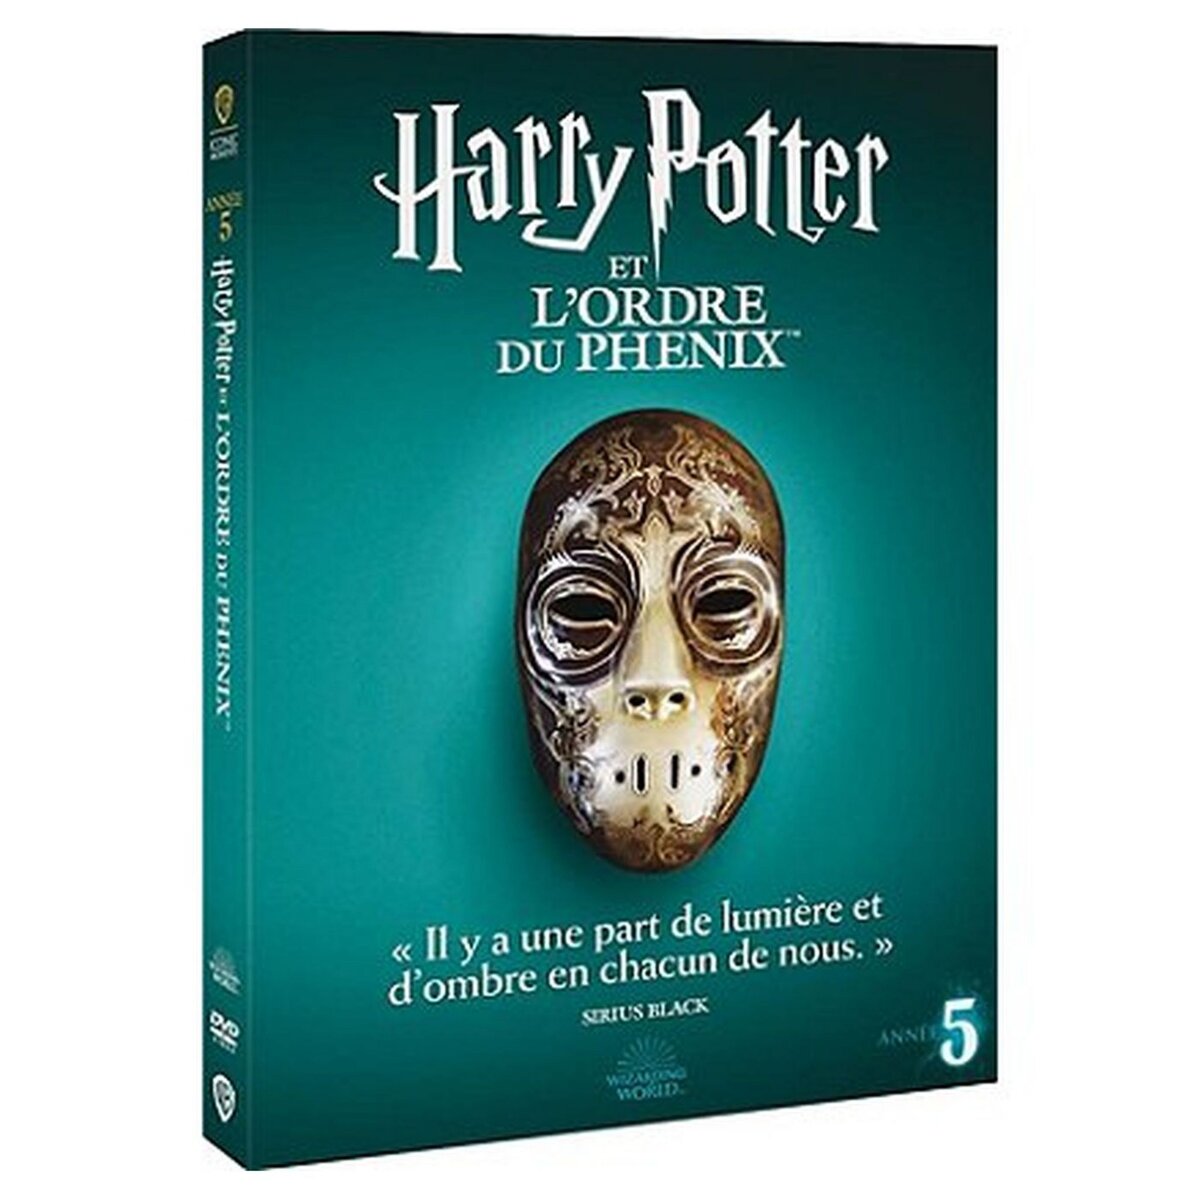 Harry Potter 5 - L'Ordre du Phénix DVD